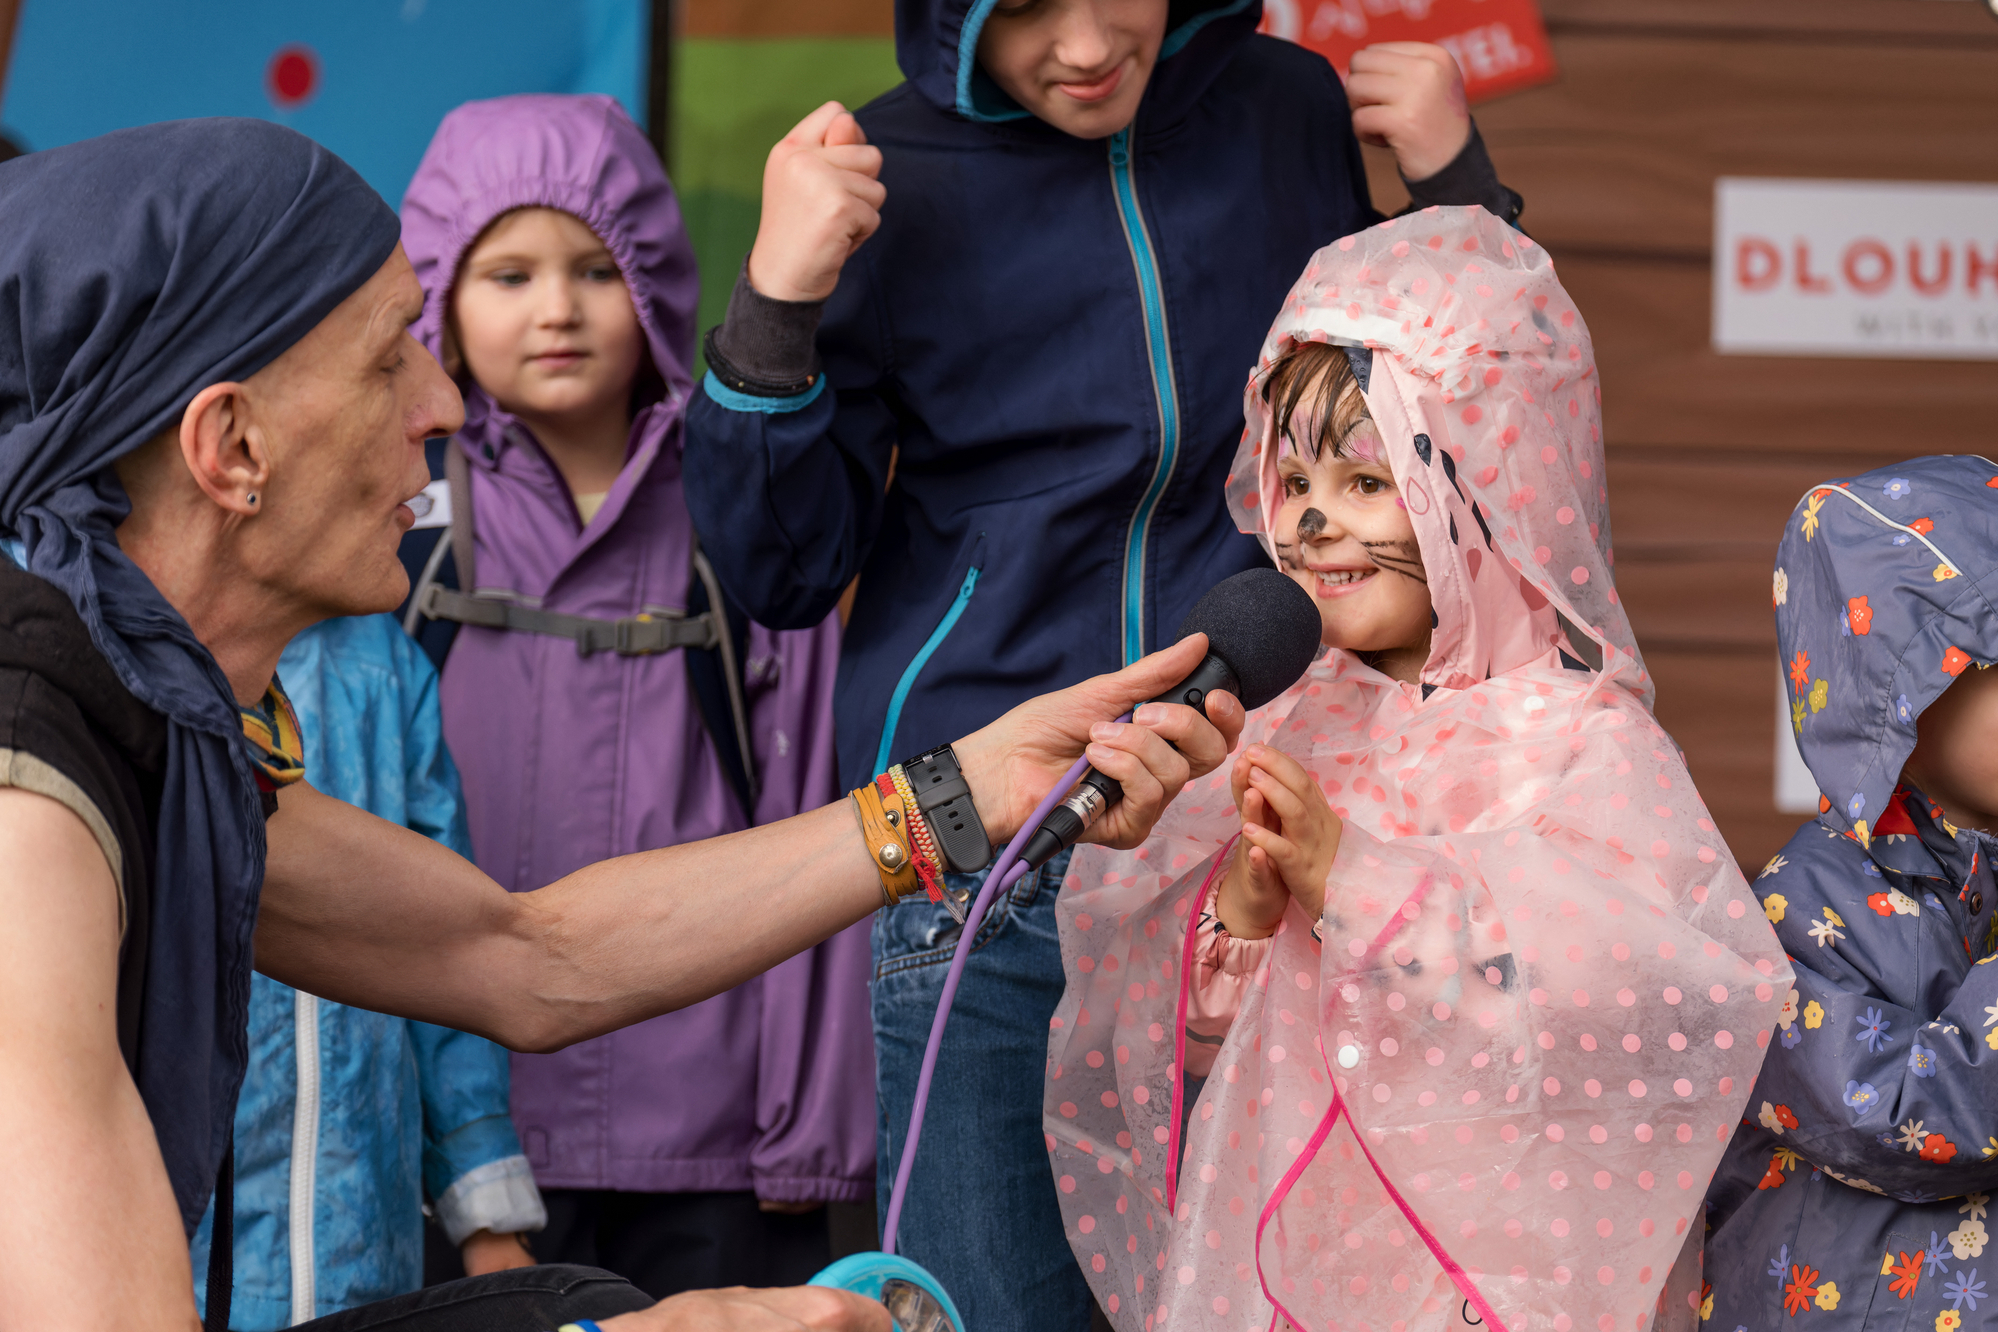 Kinderliedermacher Bernhard Fibich auf Bühne am Tag des Samariterbundes, hält Mikrofon in der Hand, Kind mit Katzenbemalung und Regencap, dahinter weitere Kinder